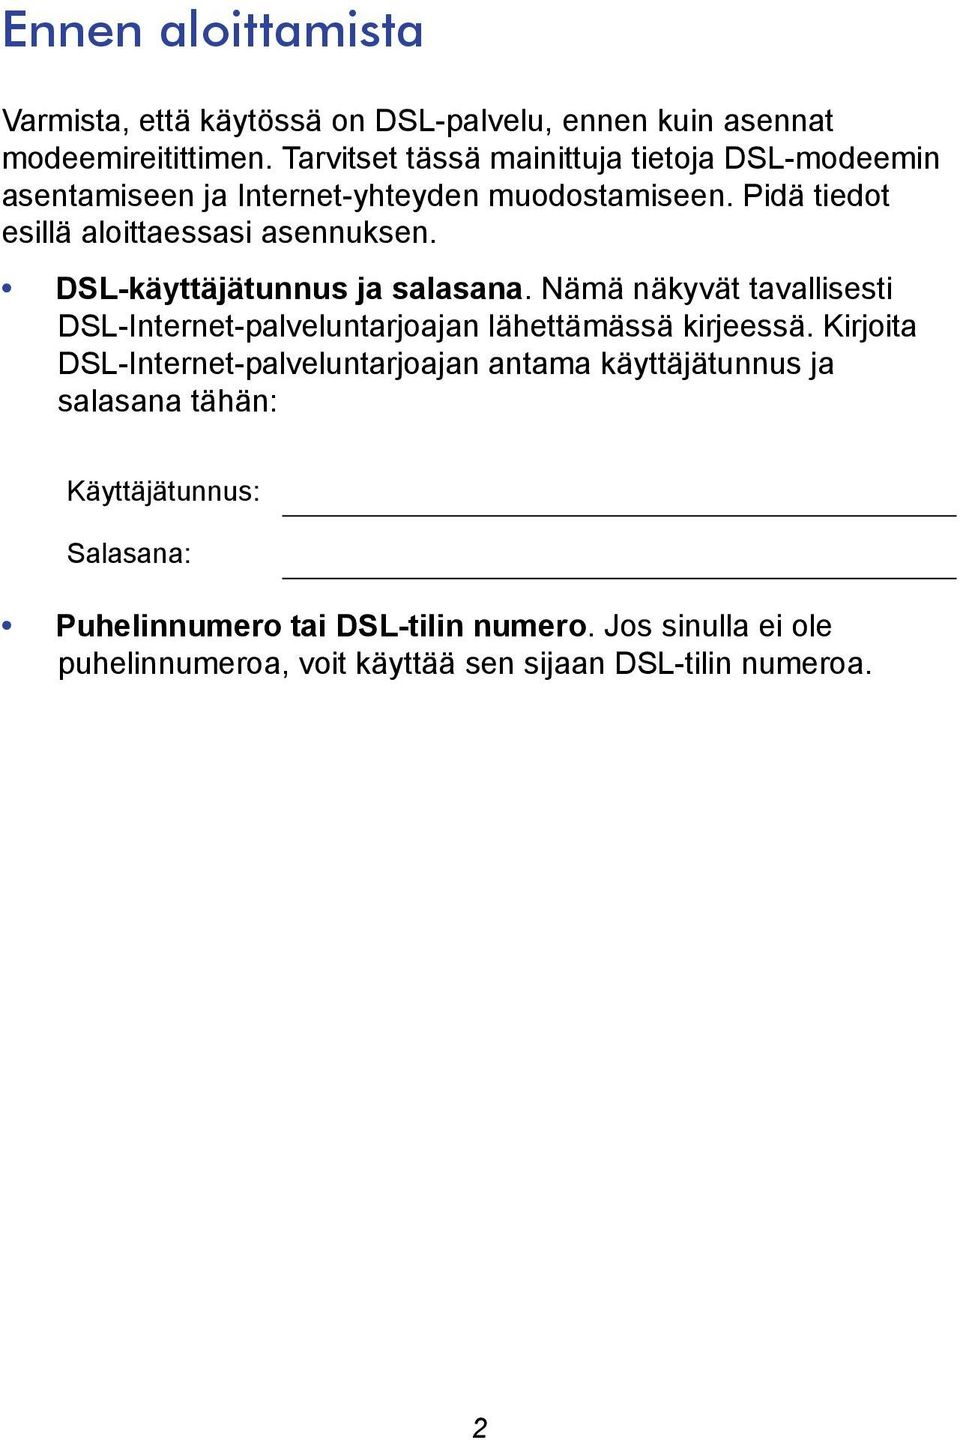 DSL-käyttäjätunnus ja salasana. Nämä näkyvät tavallisesti DSL-Internet-palveluntarjoajan lähettämässä kirjeessä.